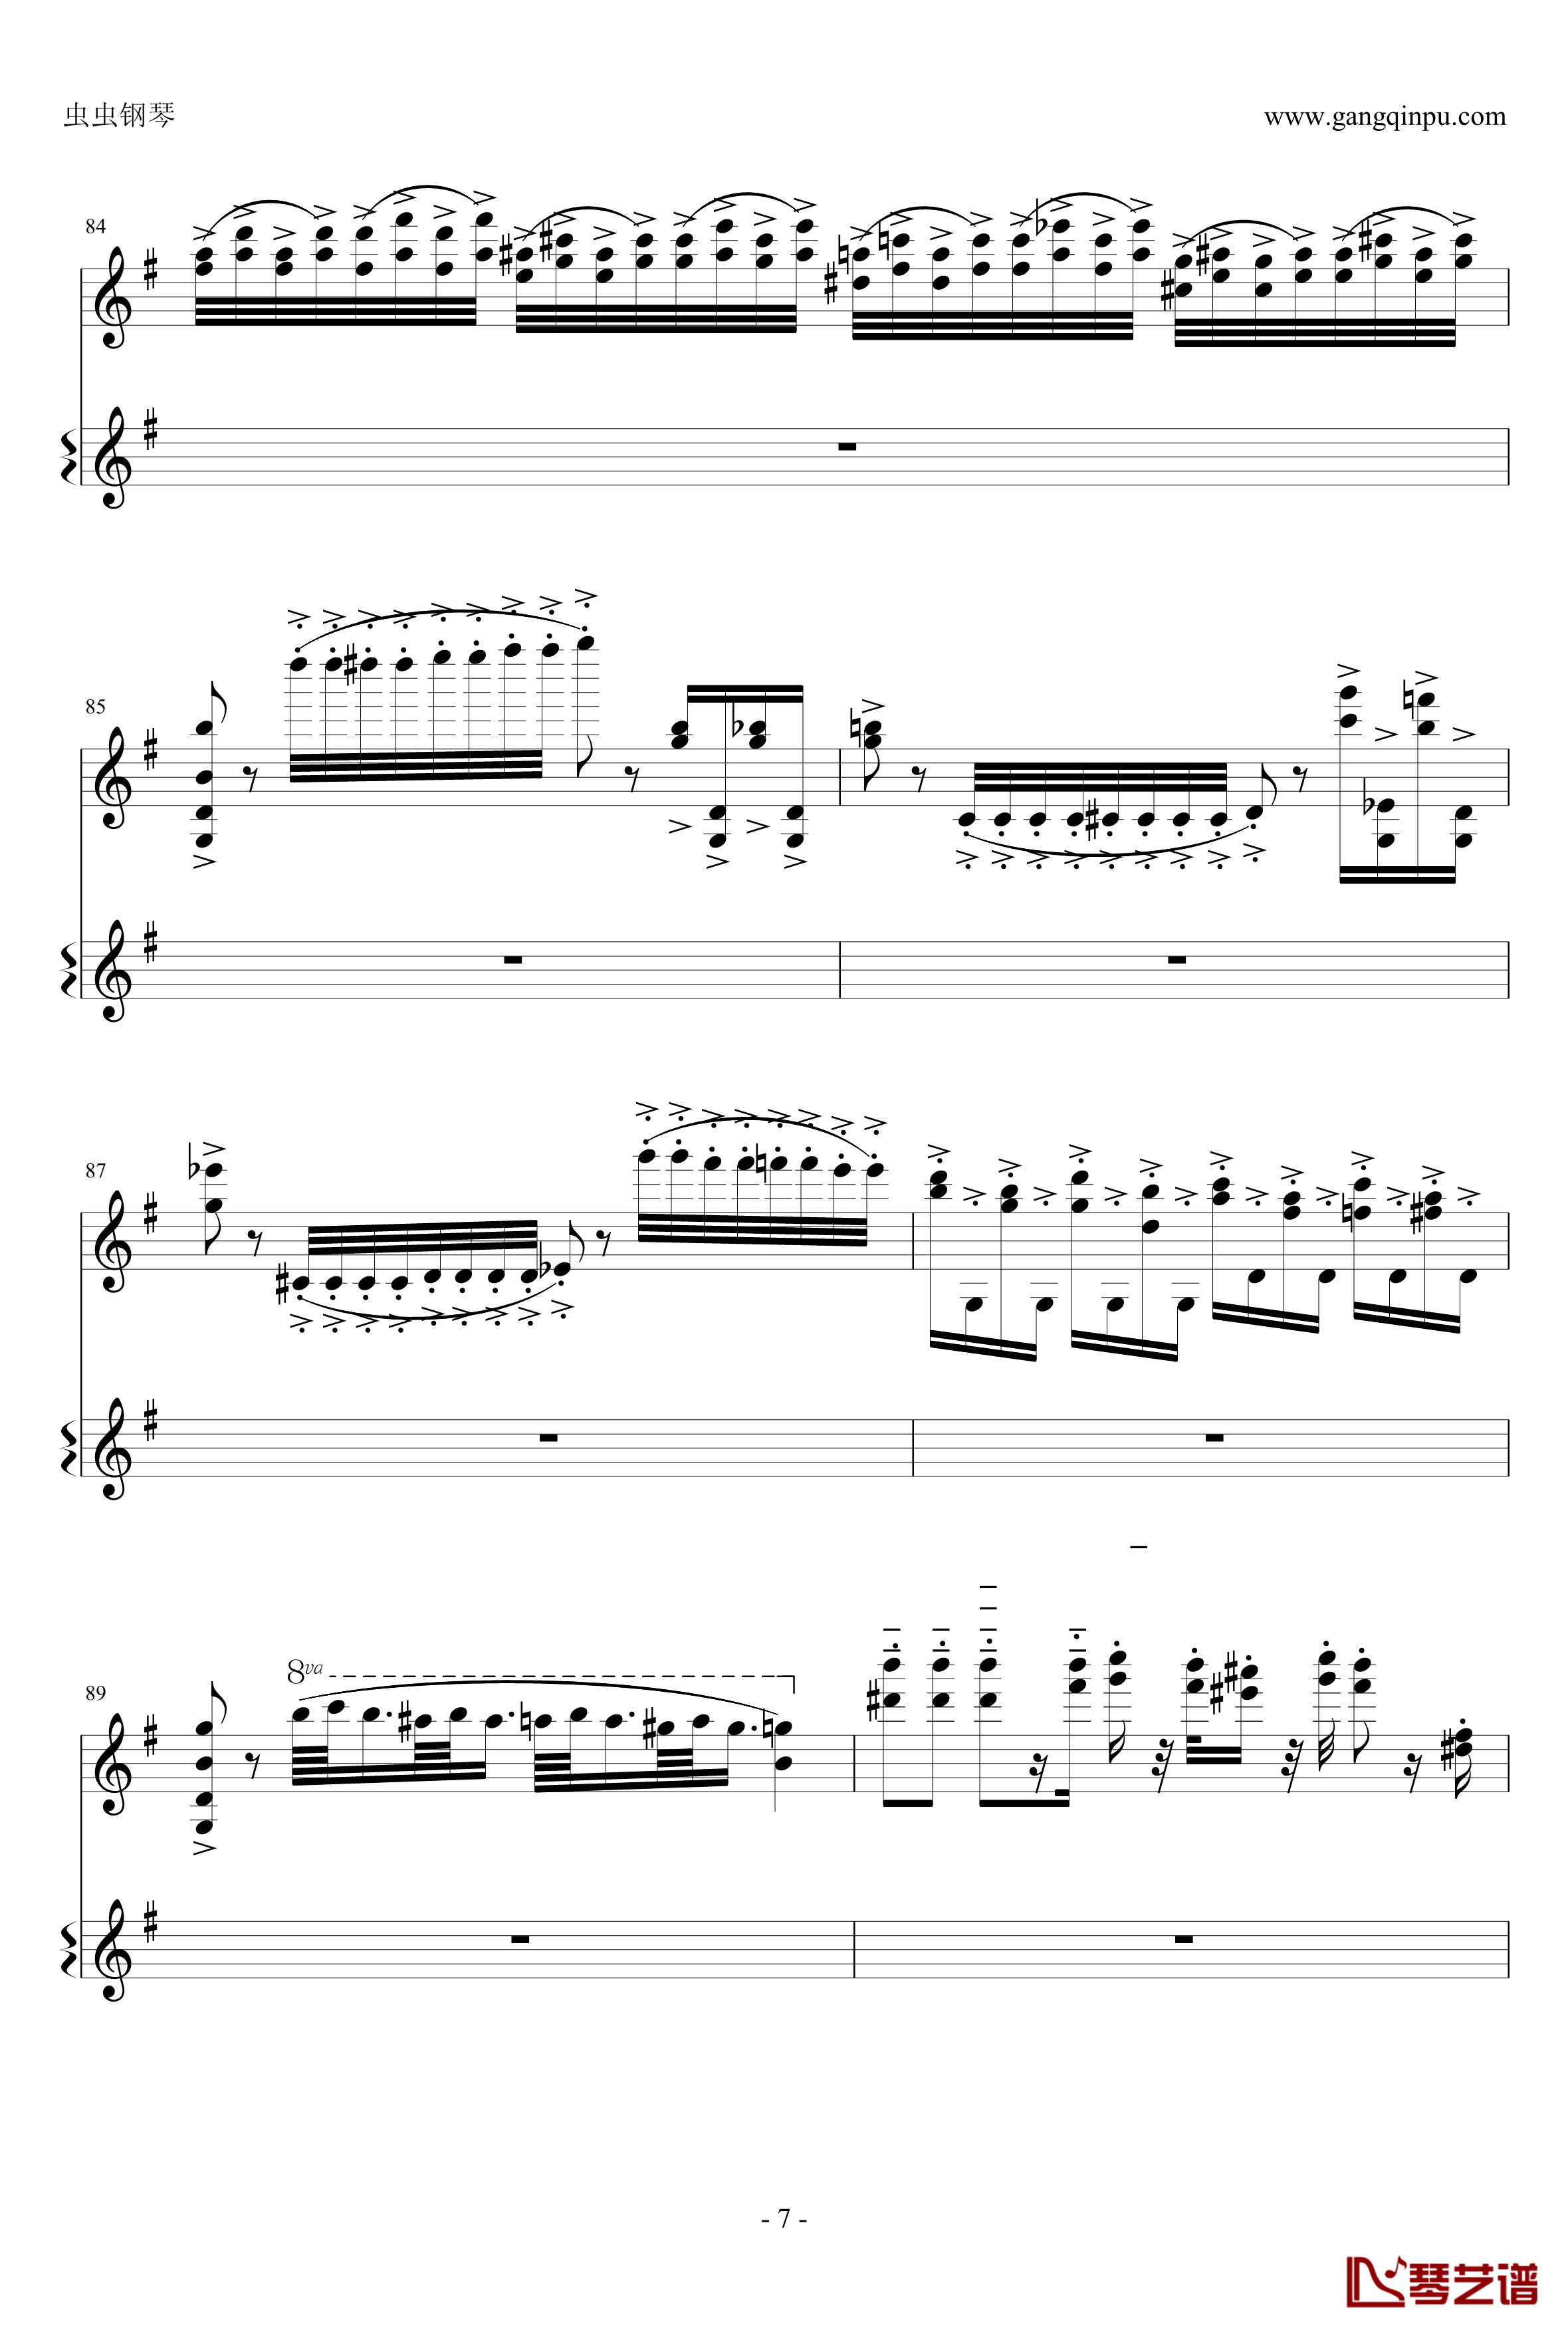 意大利国歌钢琴谱-变奏曲修改版-DXF7